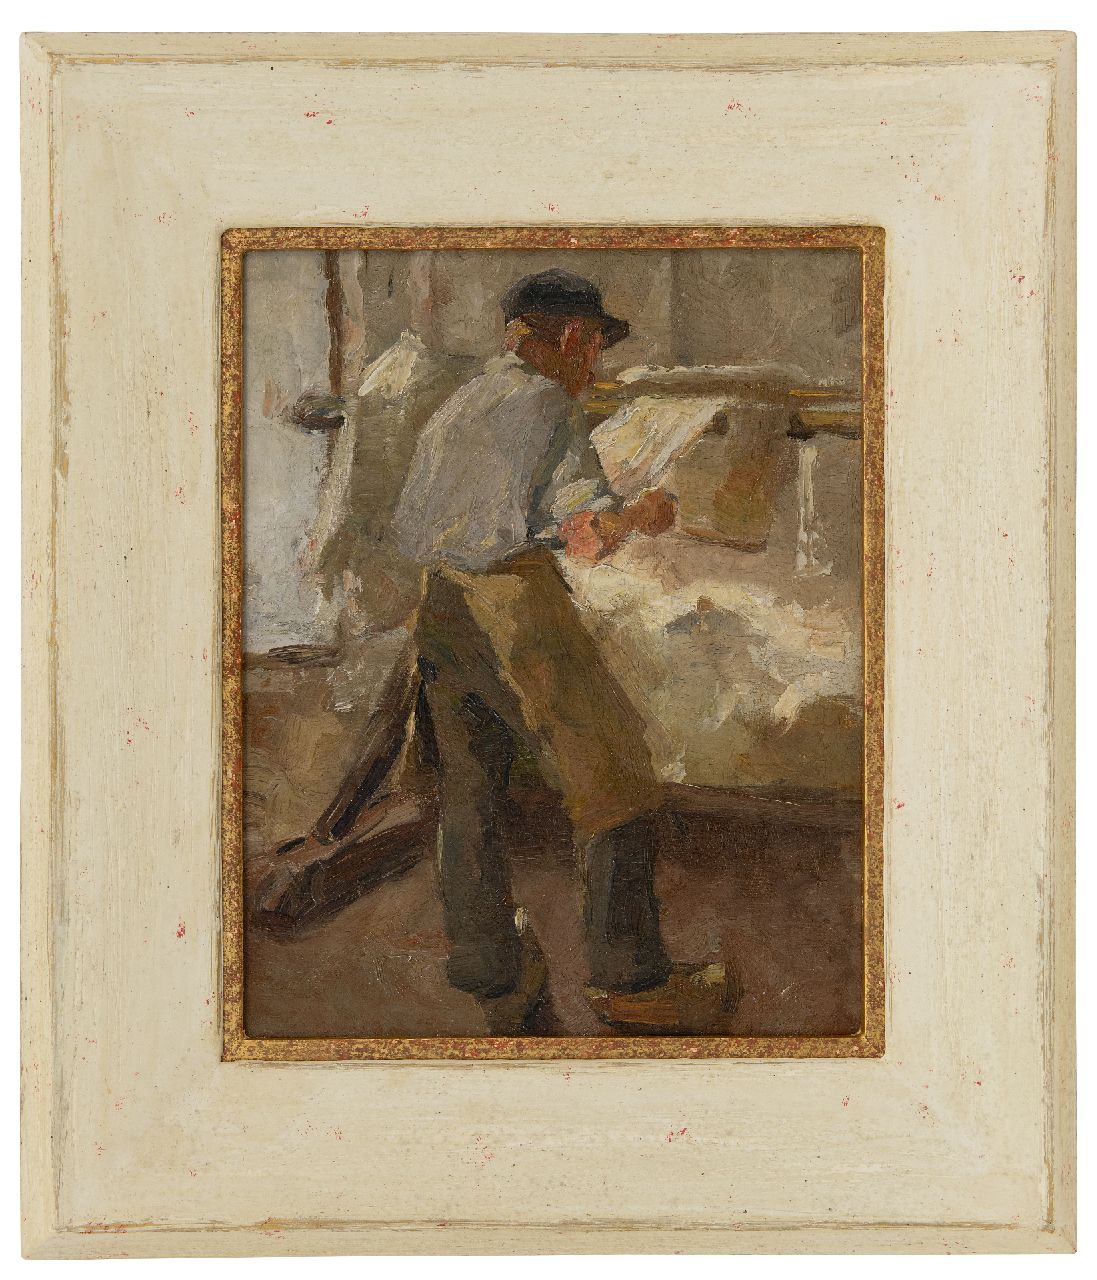 Rappard A.G.A. van | 'Anthon' Gerhard Alexander van Rappard | Schilderijen te koop aangeboden | Jonge arbeider aan een spanbok, olieverf op doek 33,1 x 26,3 cm, te dateren ca. 1890-1891